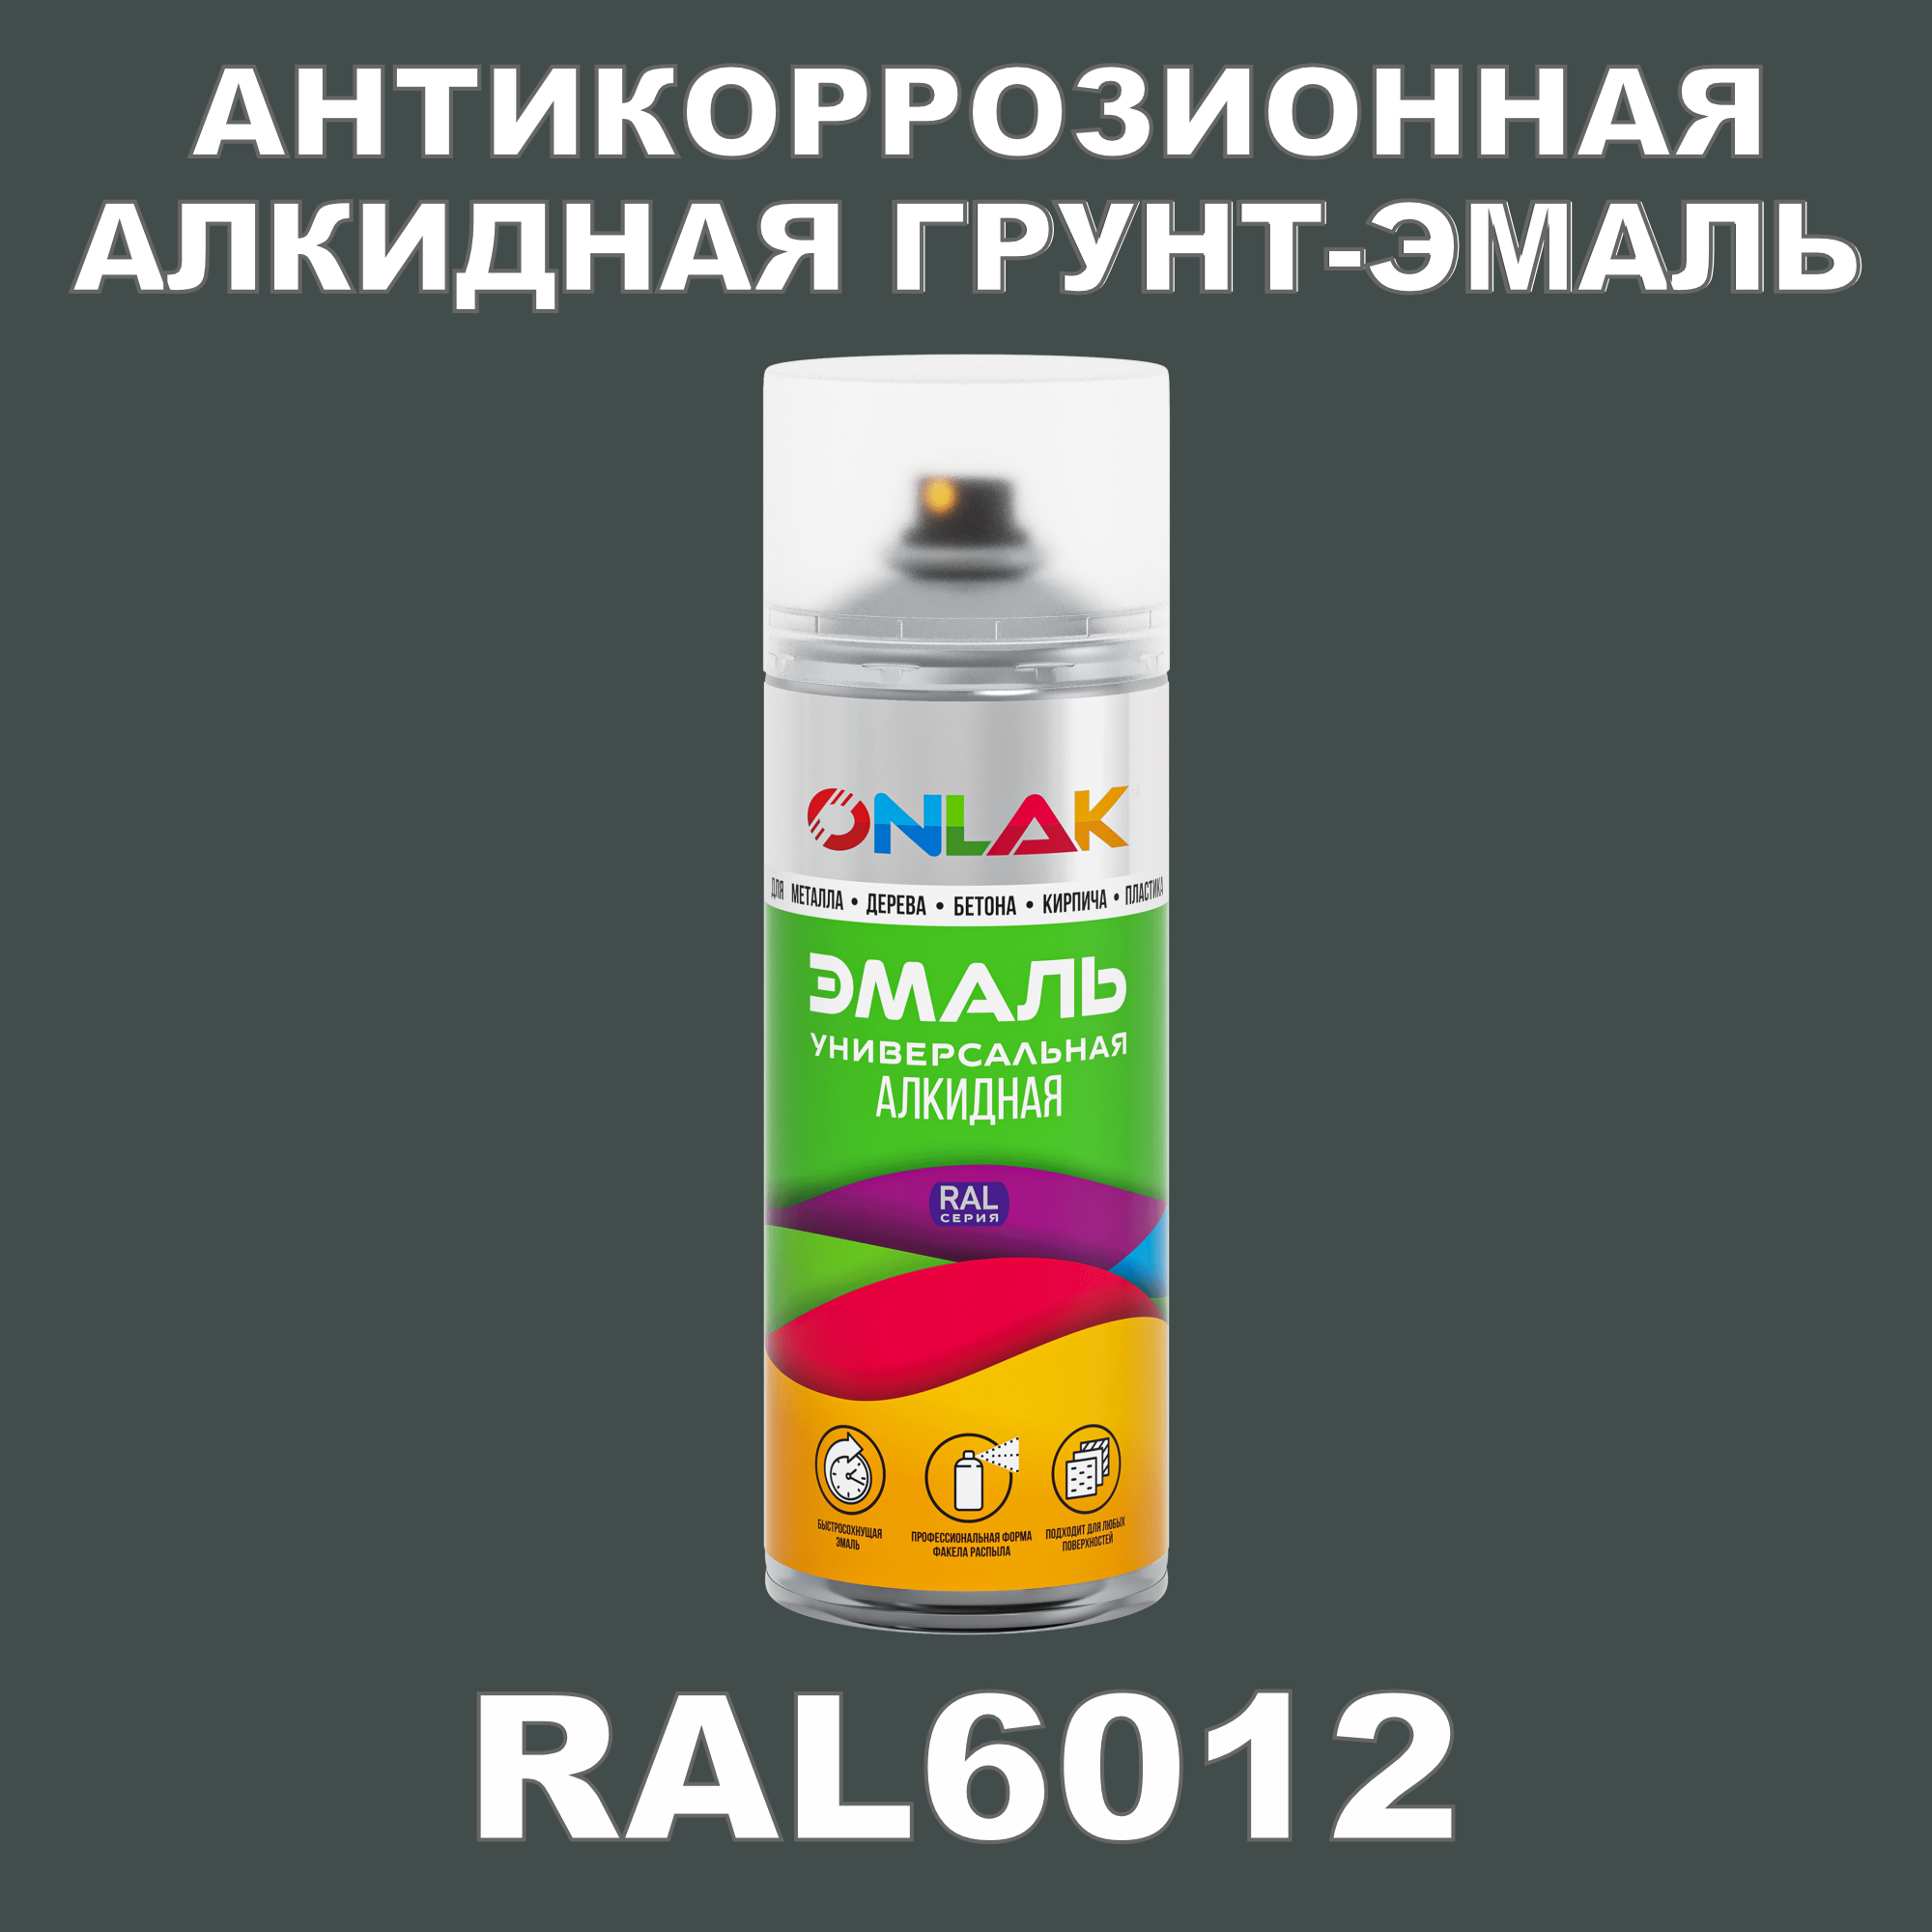 Антикоррозионная грунт-эмаль ONLAK RAL 6012,зеленый,725 мл